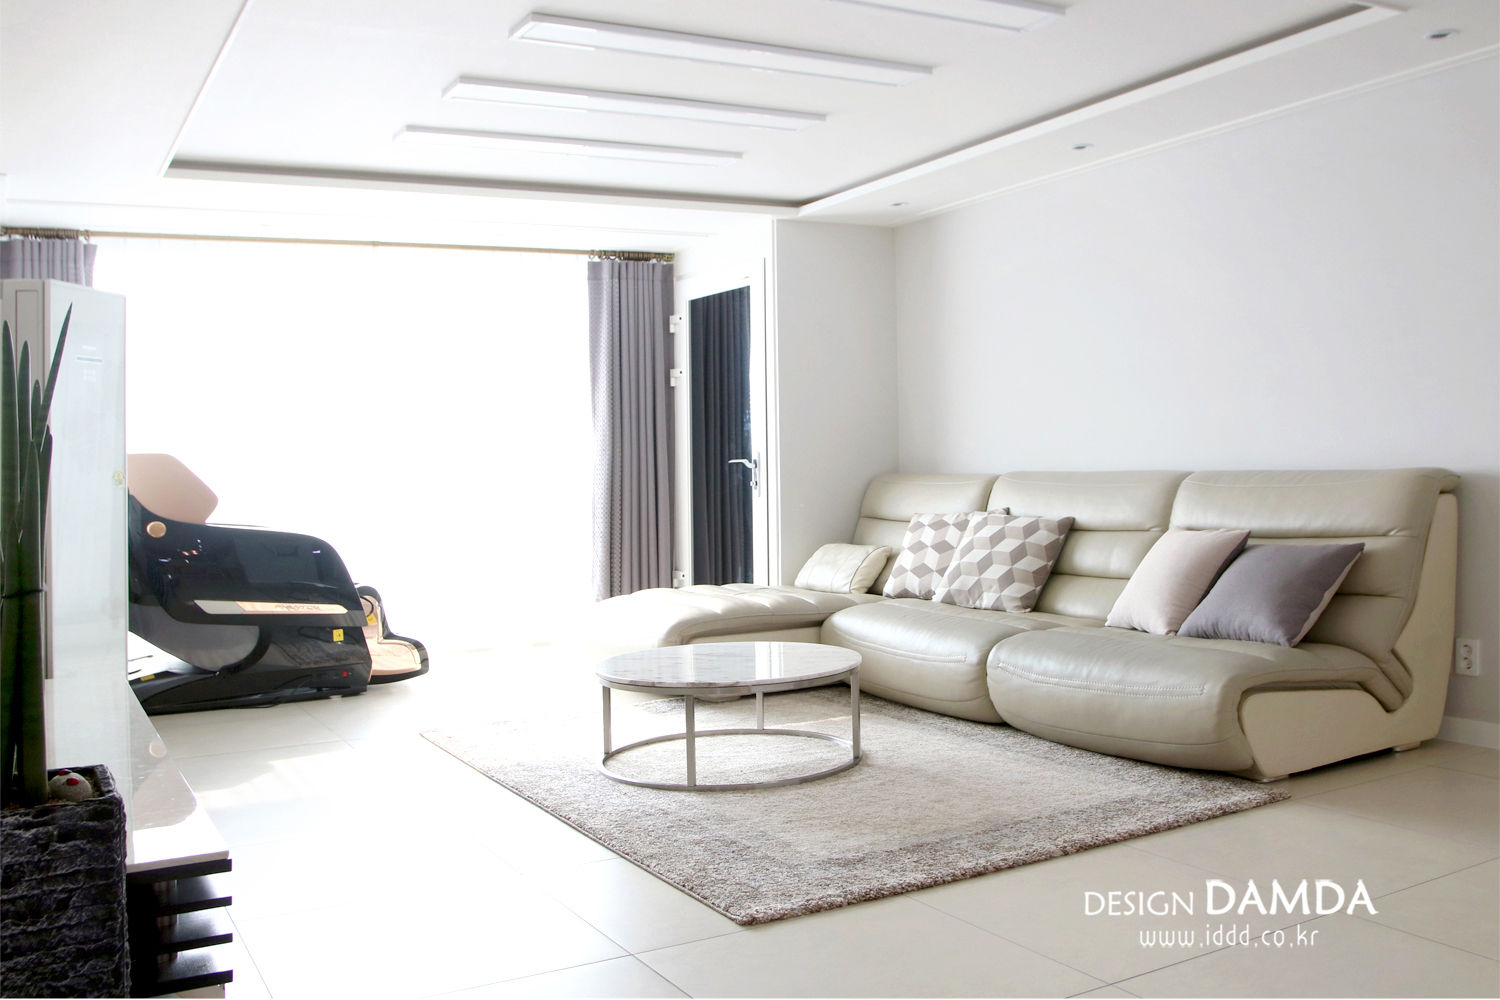 분당구 서현동 시범마을 현대아파트 39평, 디자인담다 디자인담다 Salas de estar modernas